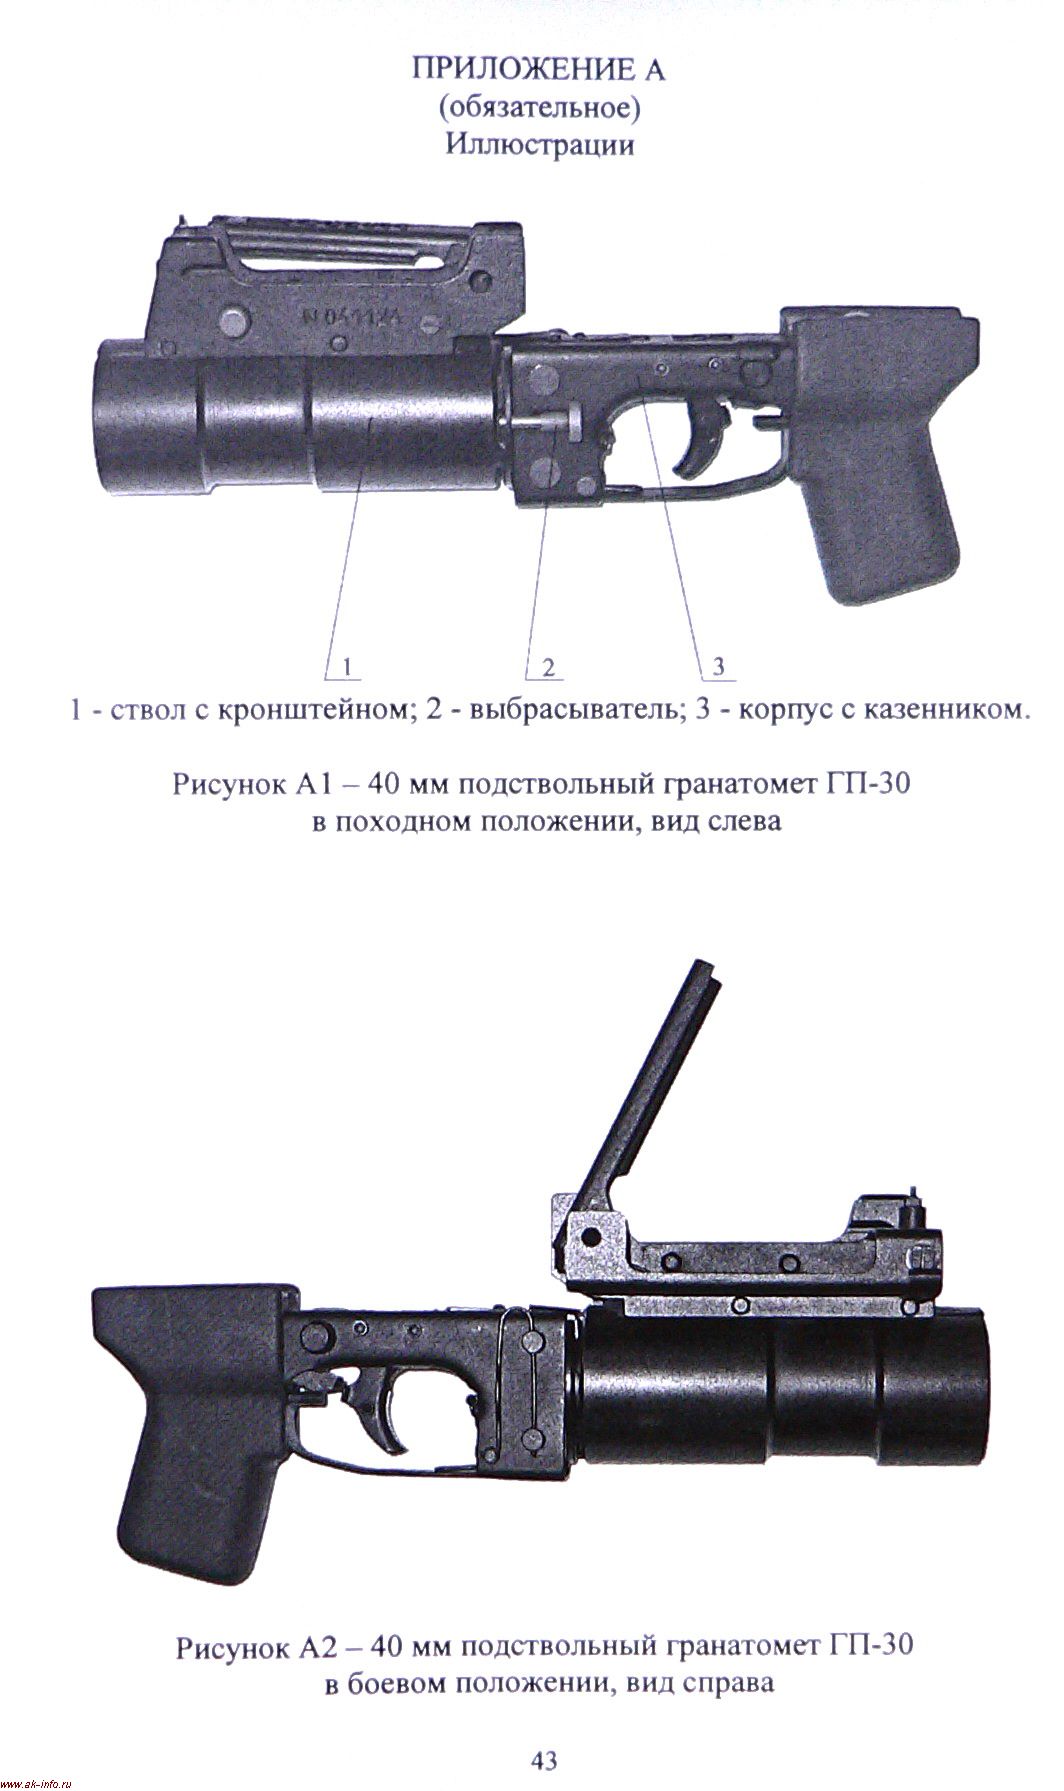 Иллюстрация ГП-30М из Руководства по ГП-30